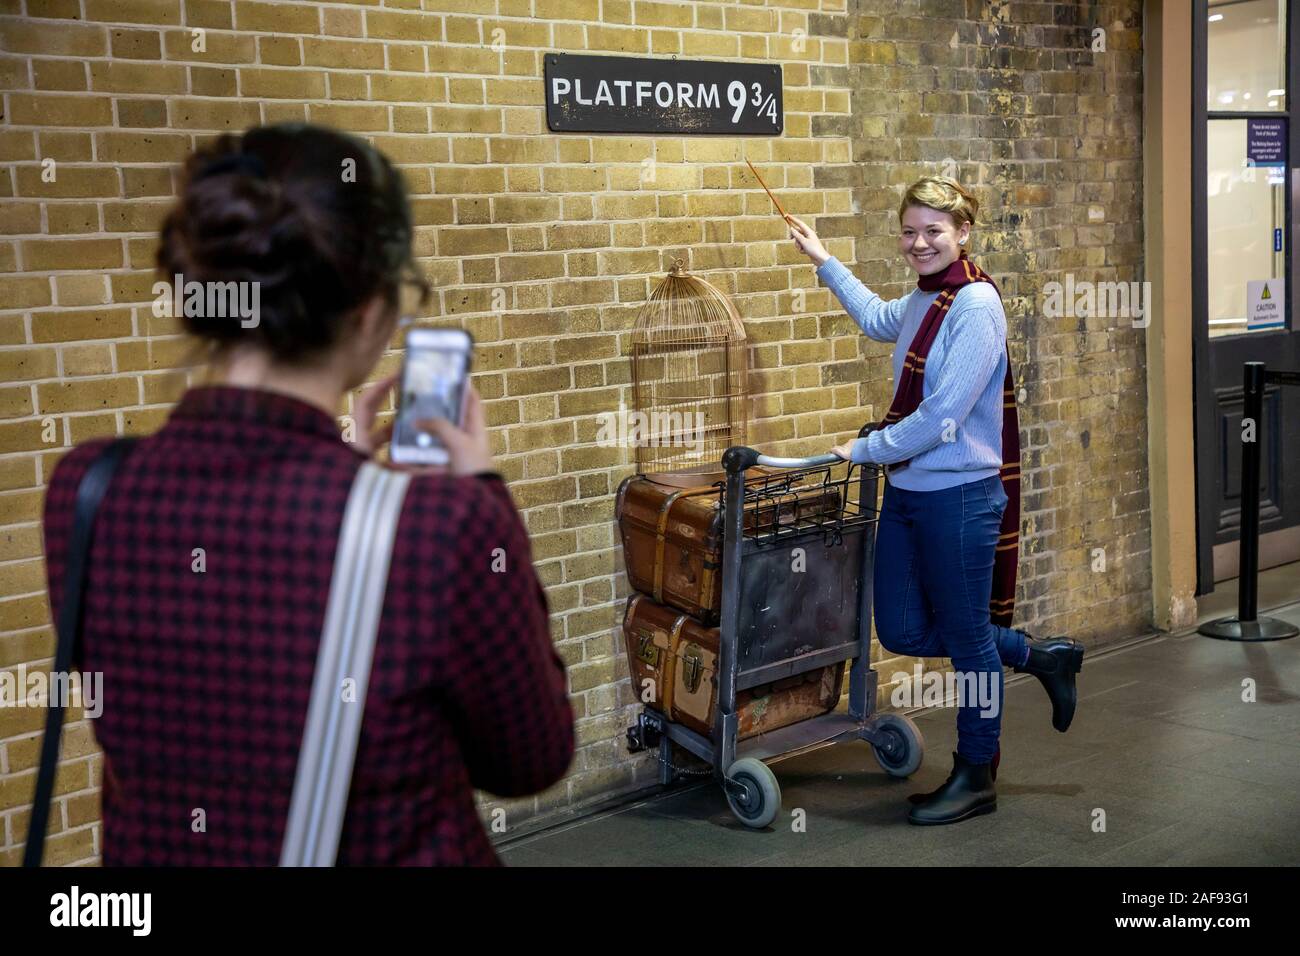 Gare la gare de Kings Cross Station, Hall, Londres, Grande-Bretagne, la plate-forme 9 3/4, l'emplacement du premier film de Harry Potter, Banque D'Images